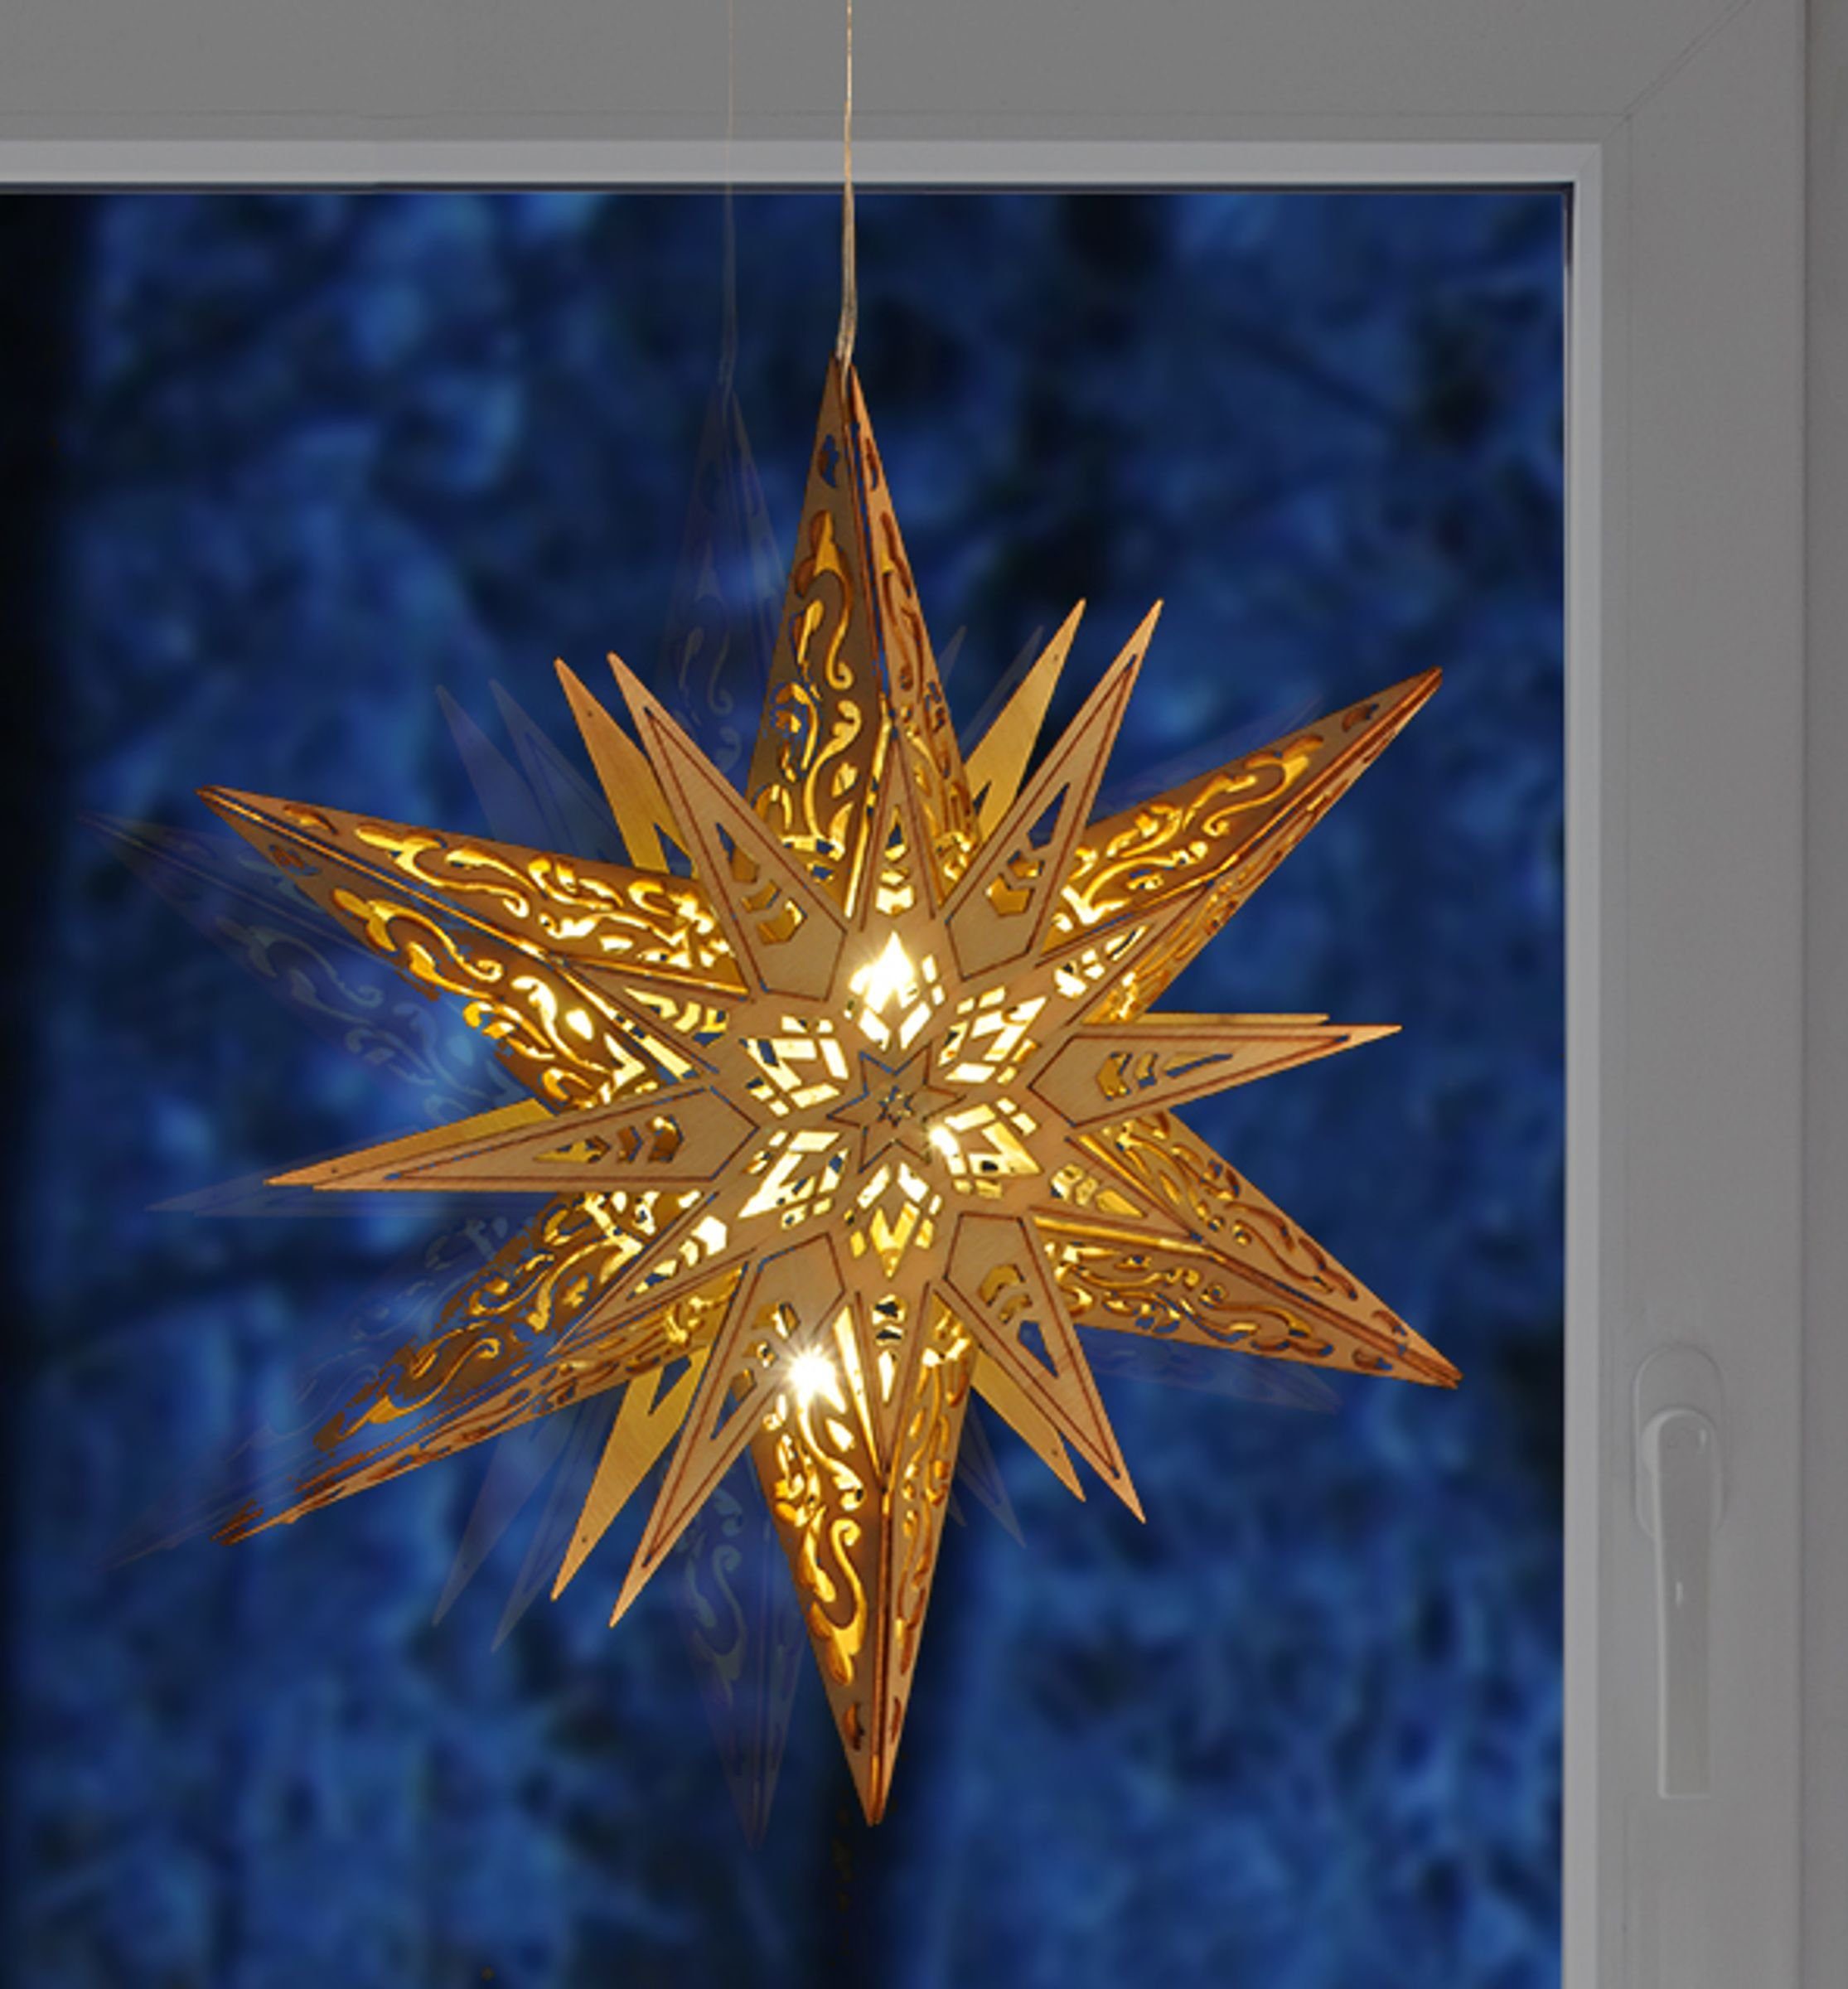 Stern Weihnachtsbeleuchtung Stern aus LED Haushalt International Holz Weihnachtsdeko Beleuchteter